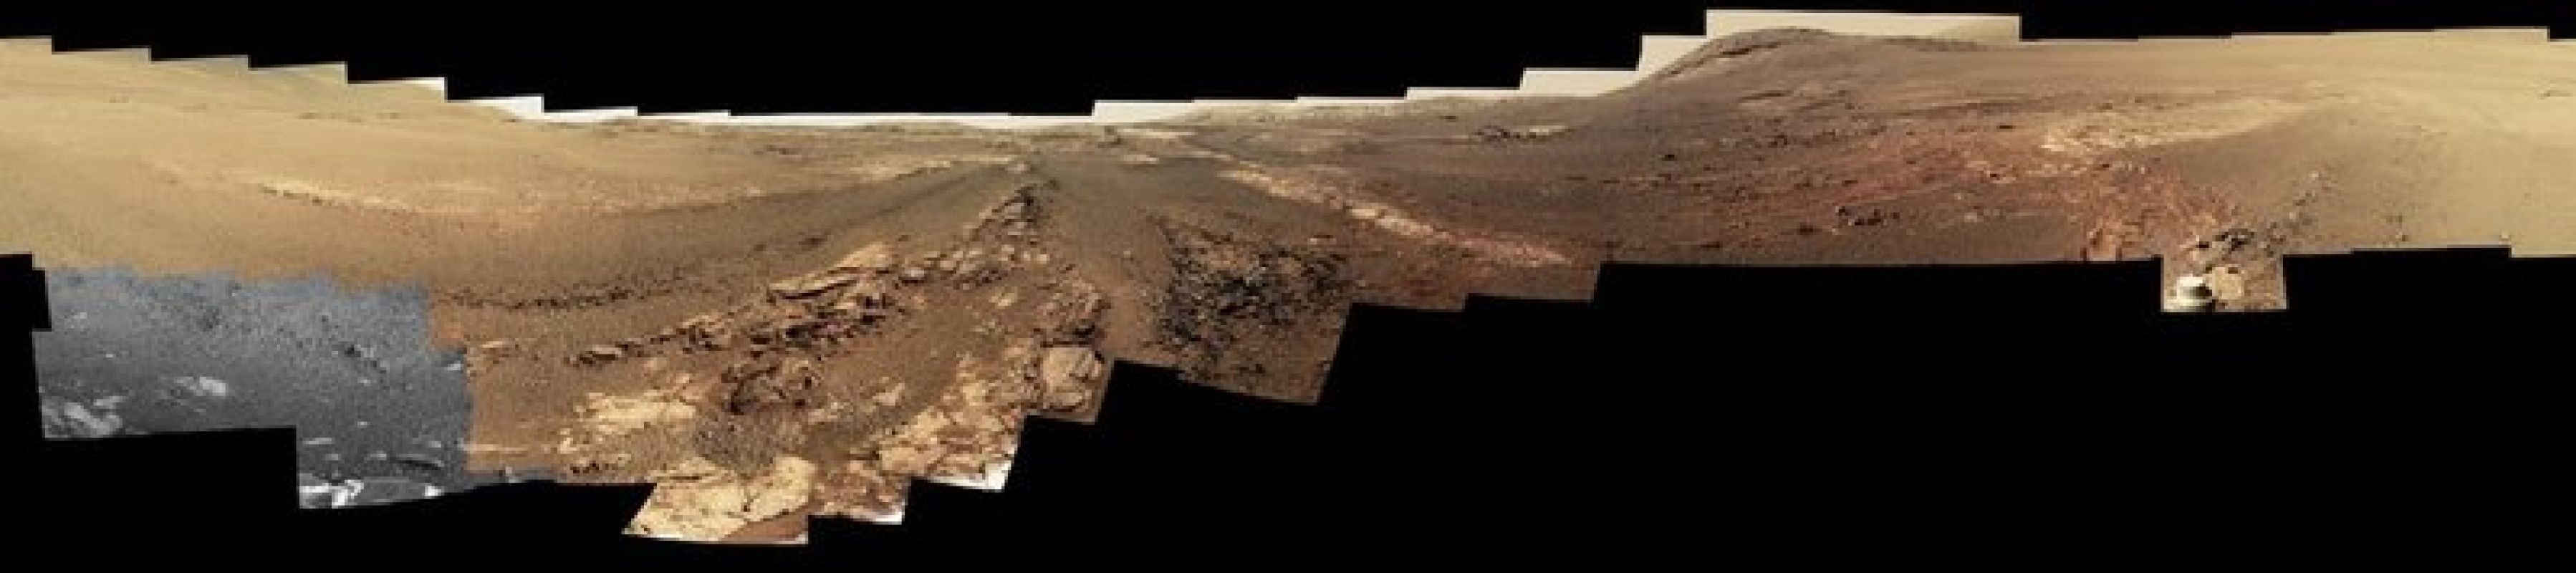 Последние фотографии, сделанные Opportunity на Марсе, появились в интернете